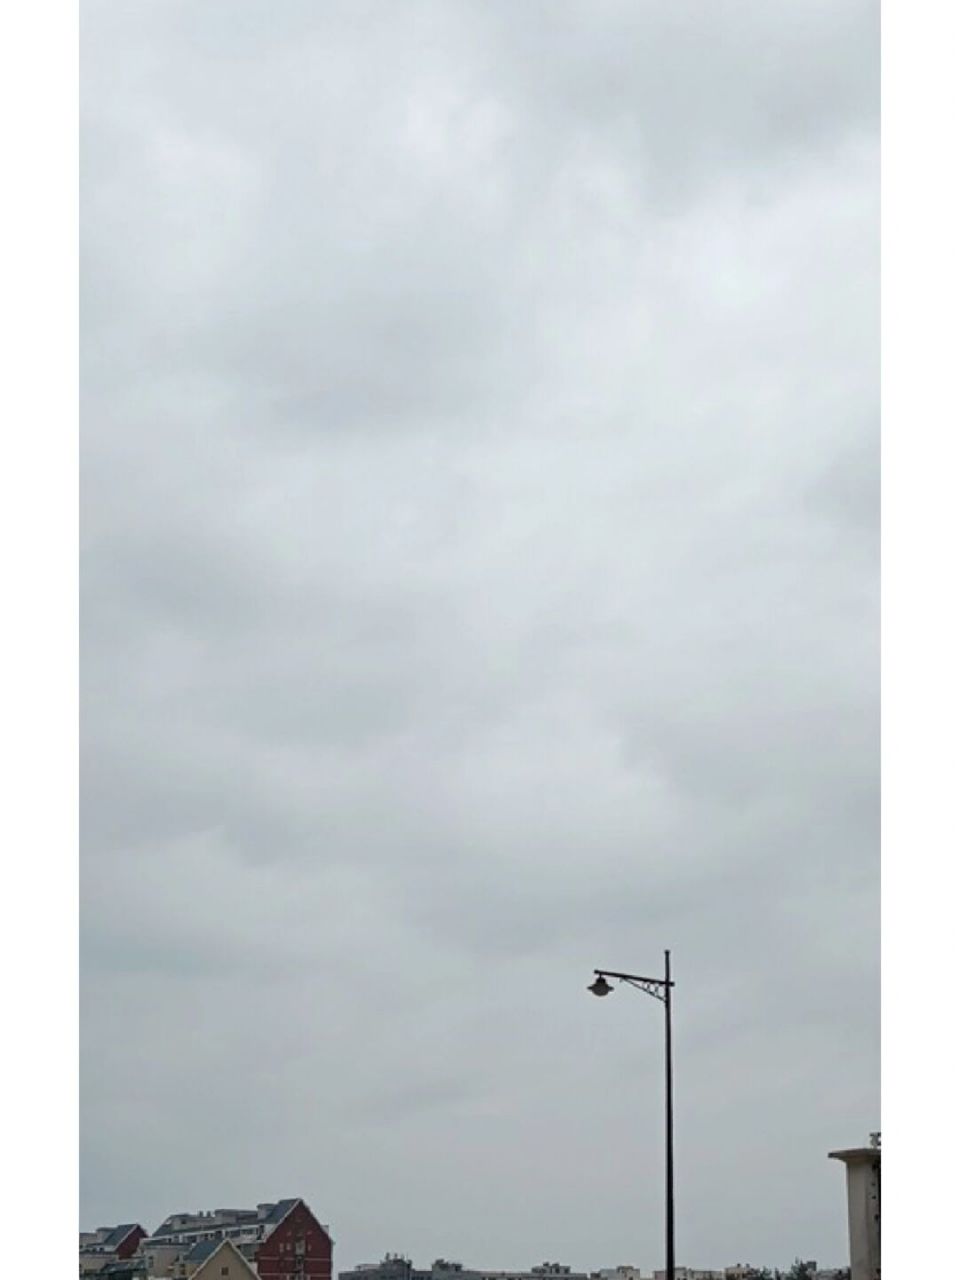 6月16日人在平潭,阴天 91 今天平潭天气预报显示暴雨,25～28℃,沿海